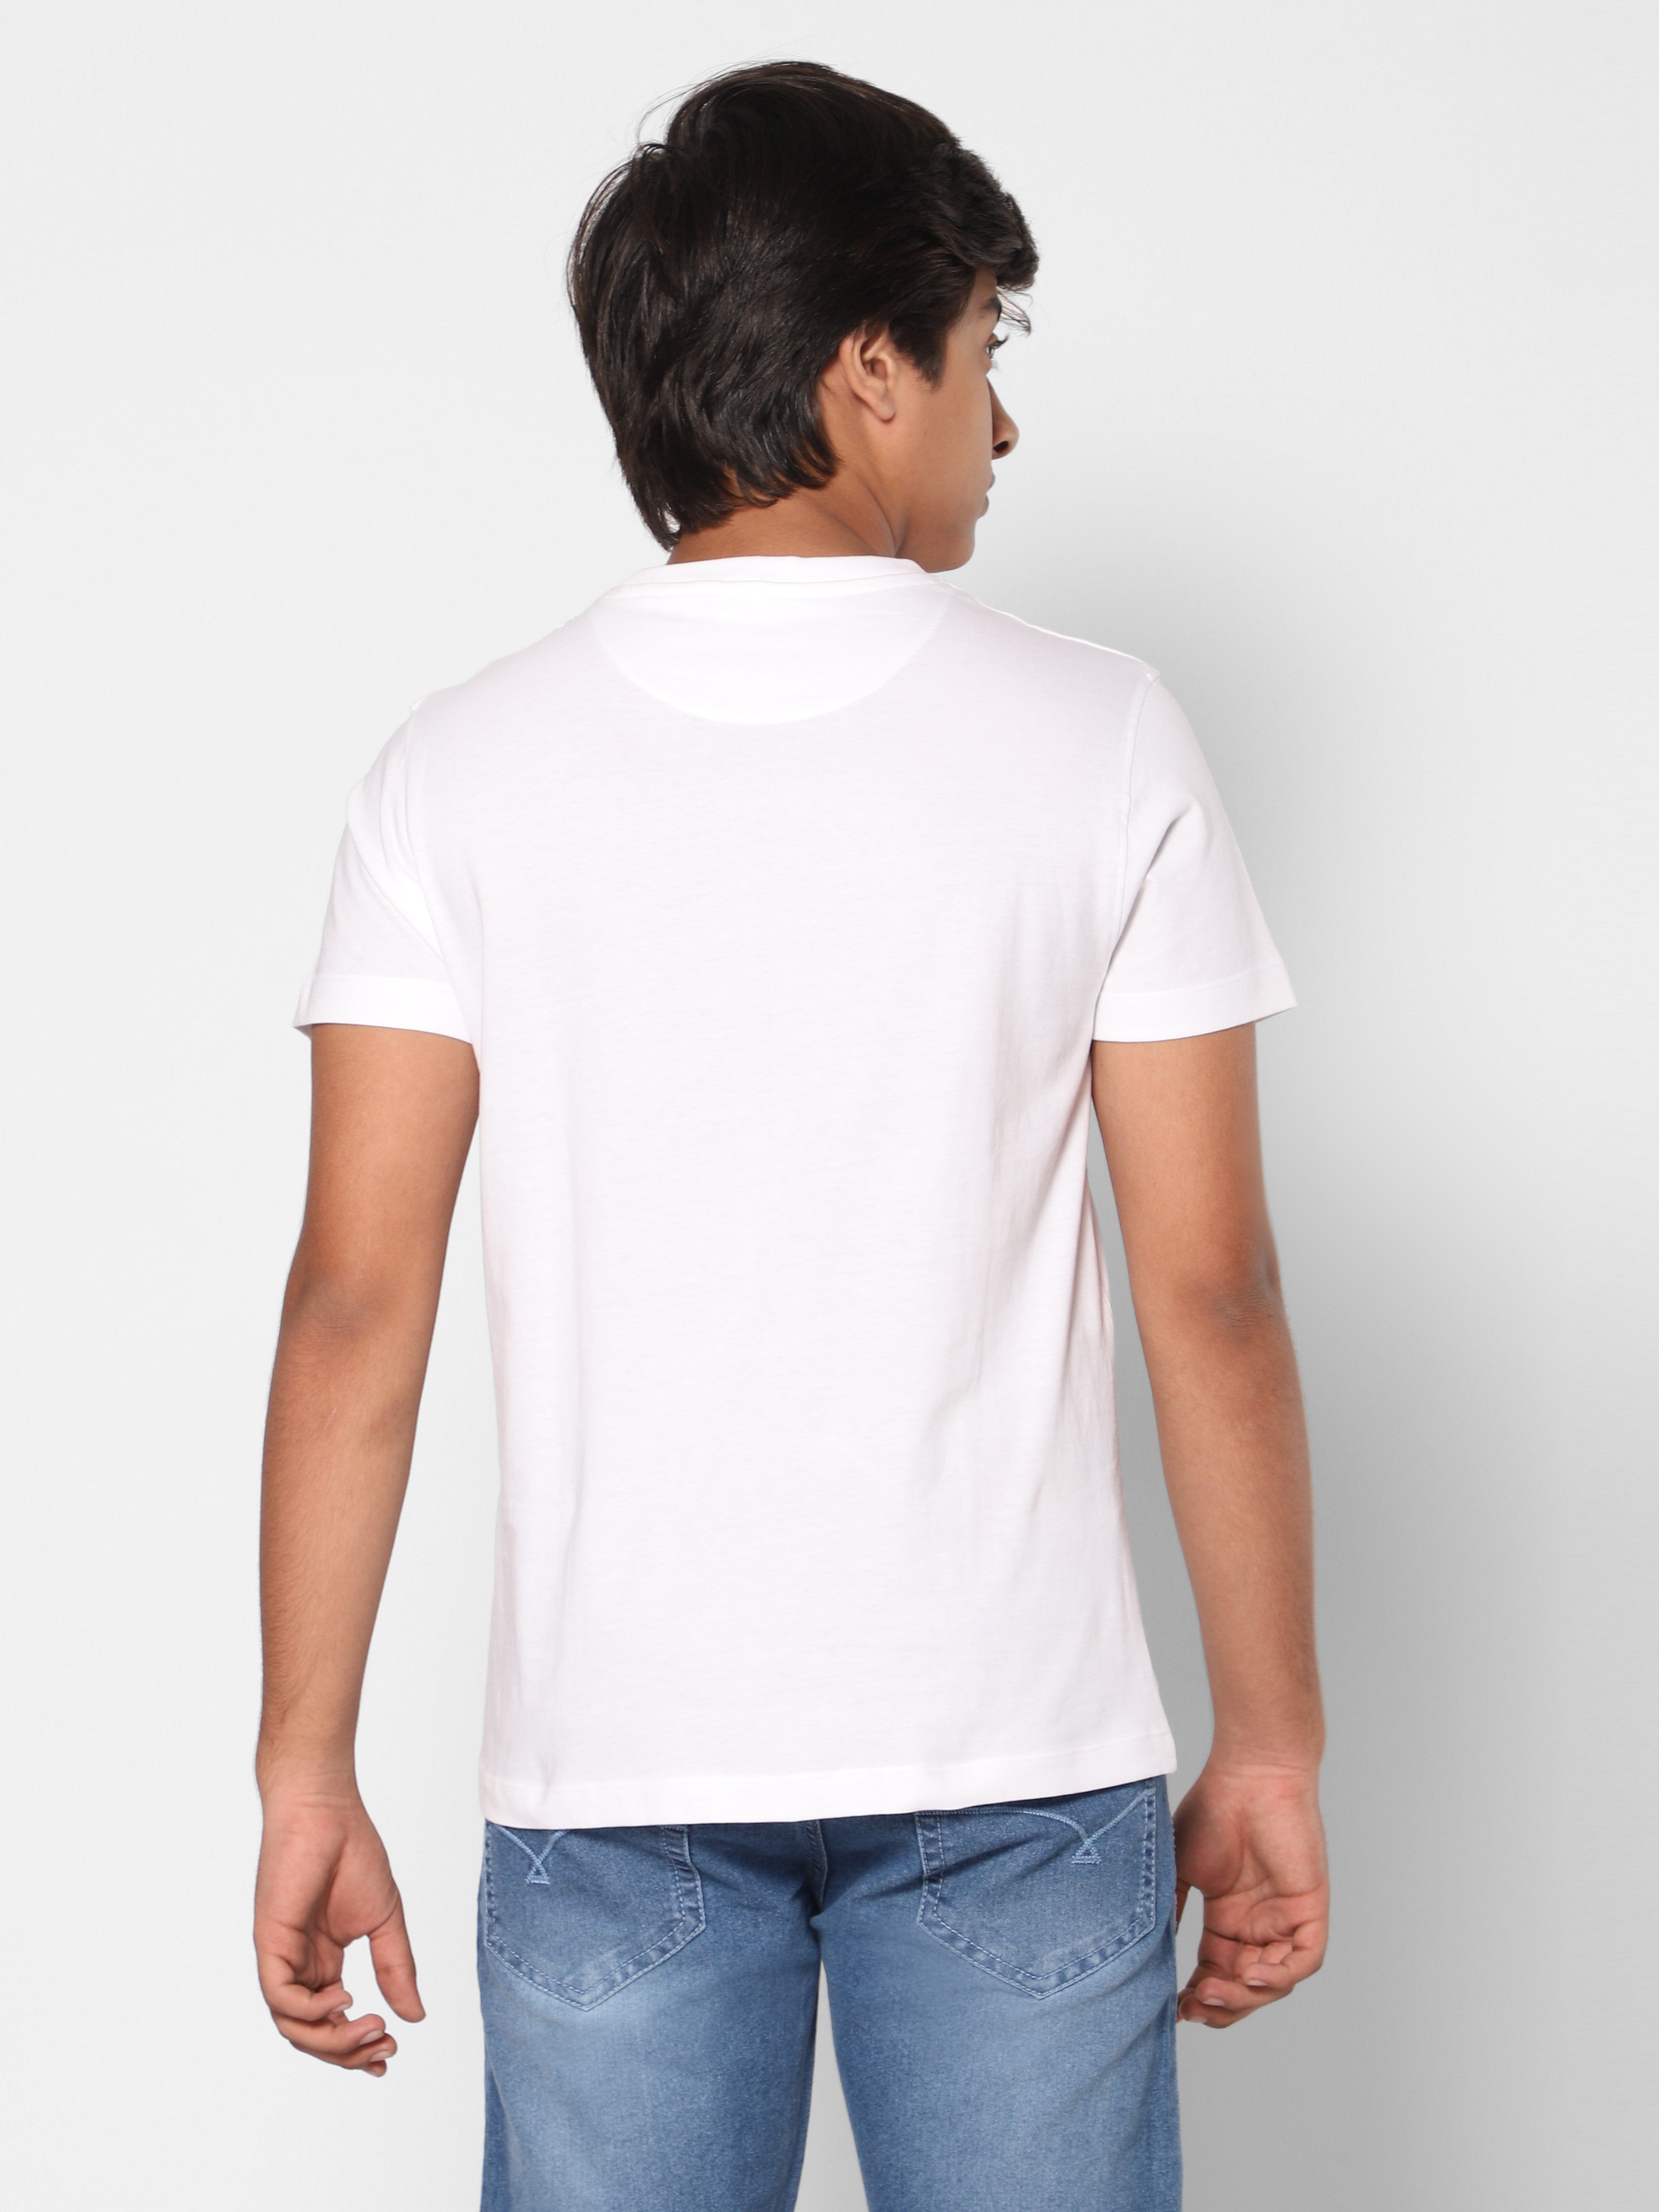 TeenTrums Regular Boys Statement T-shirt Stay Weird buddy foil print-White